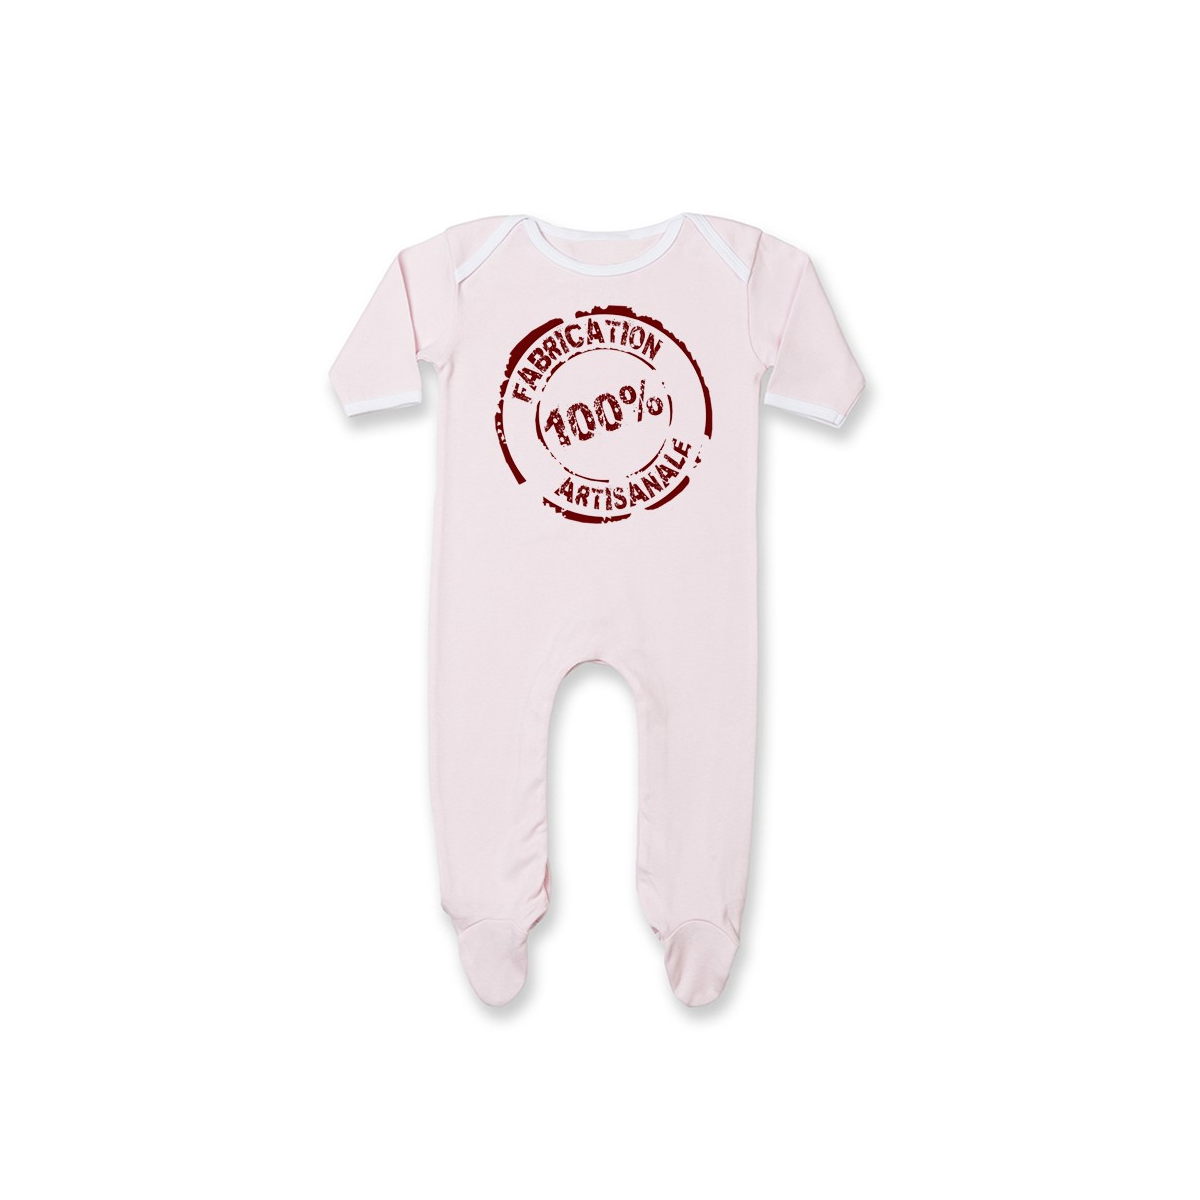 Pyjama bébé Fabrication 100% Artisanale